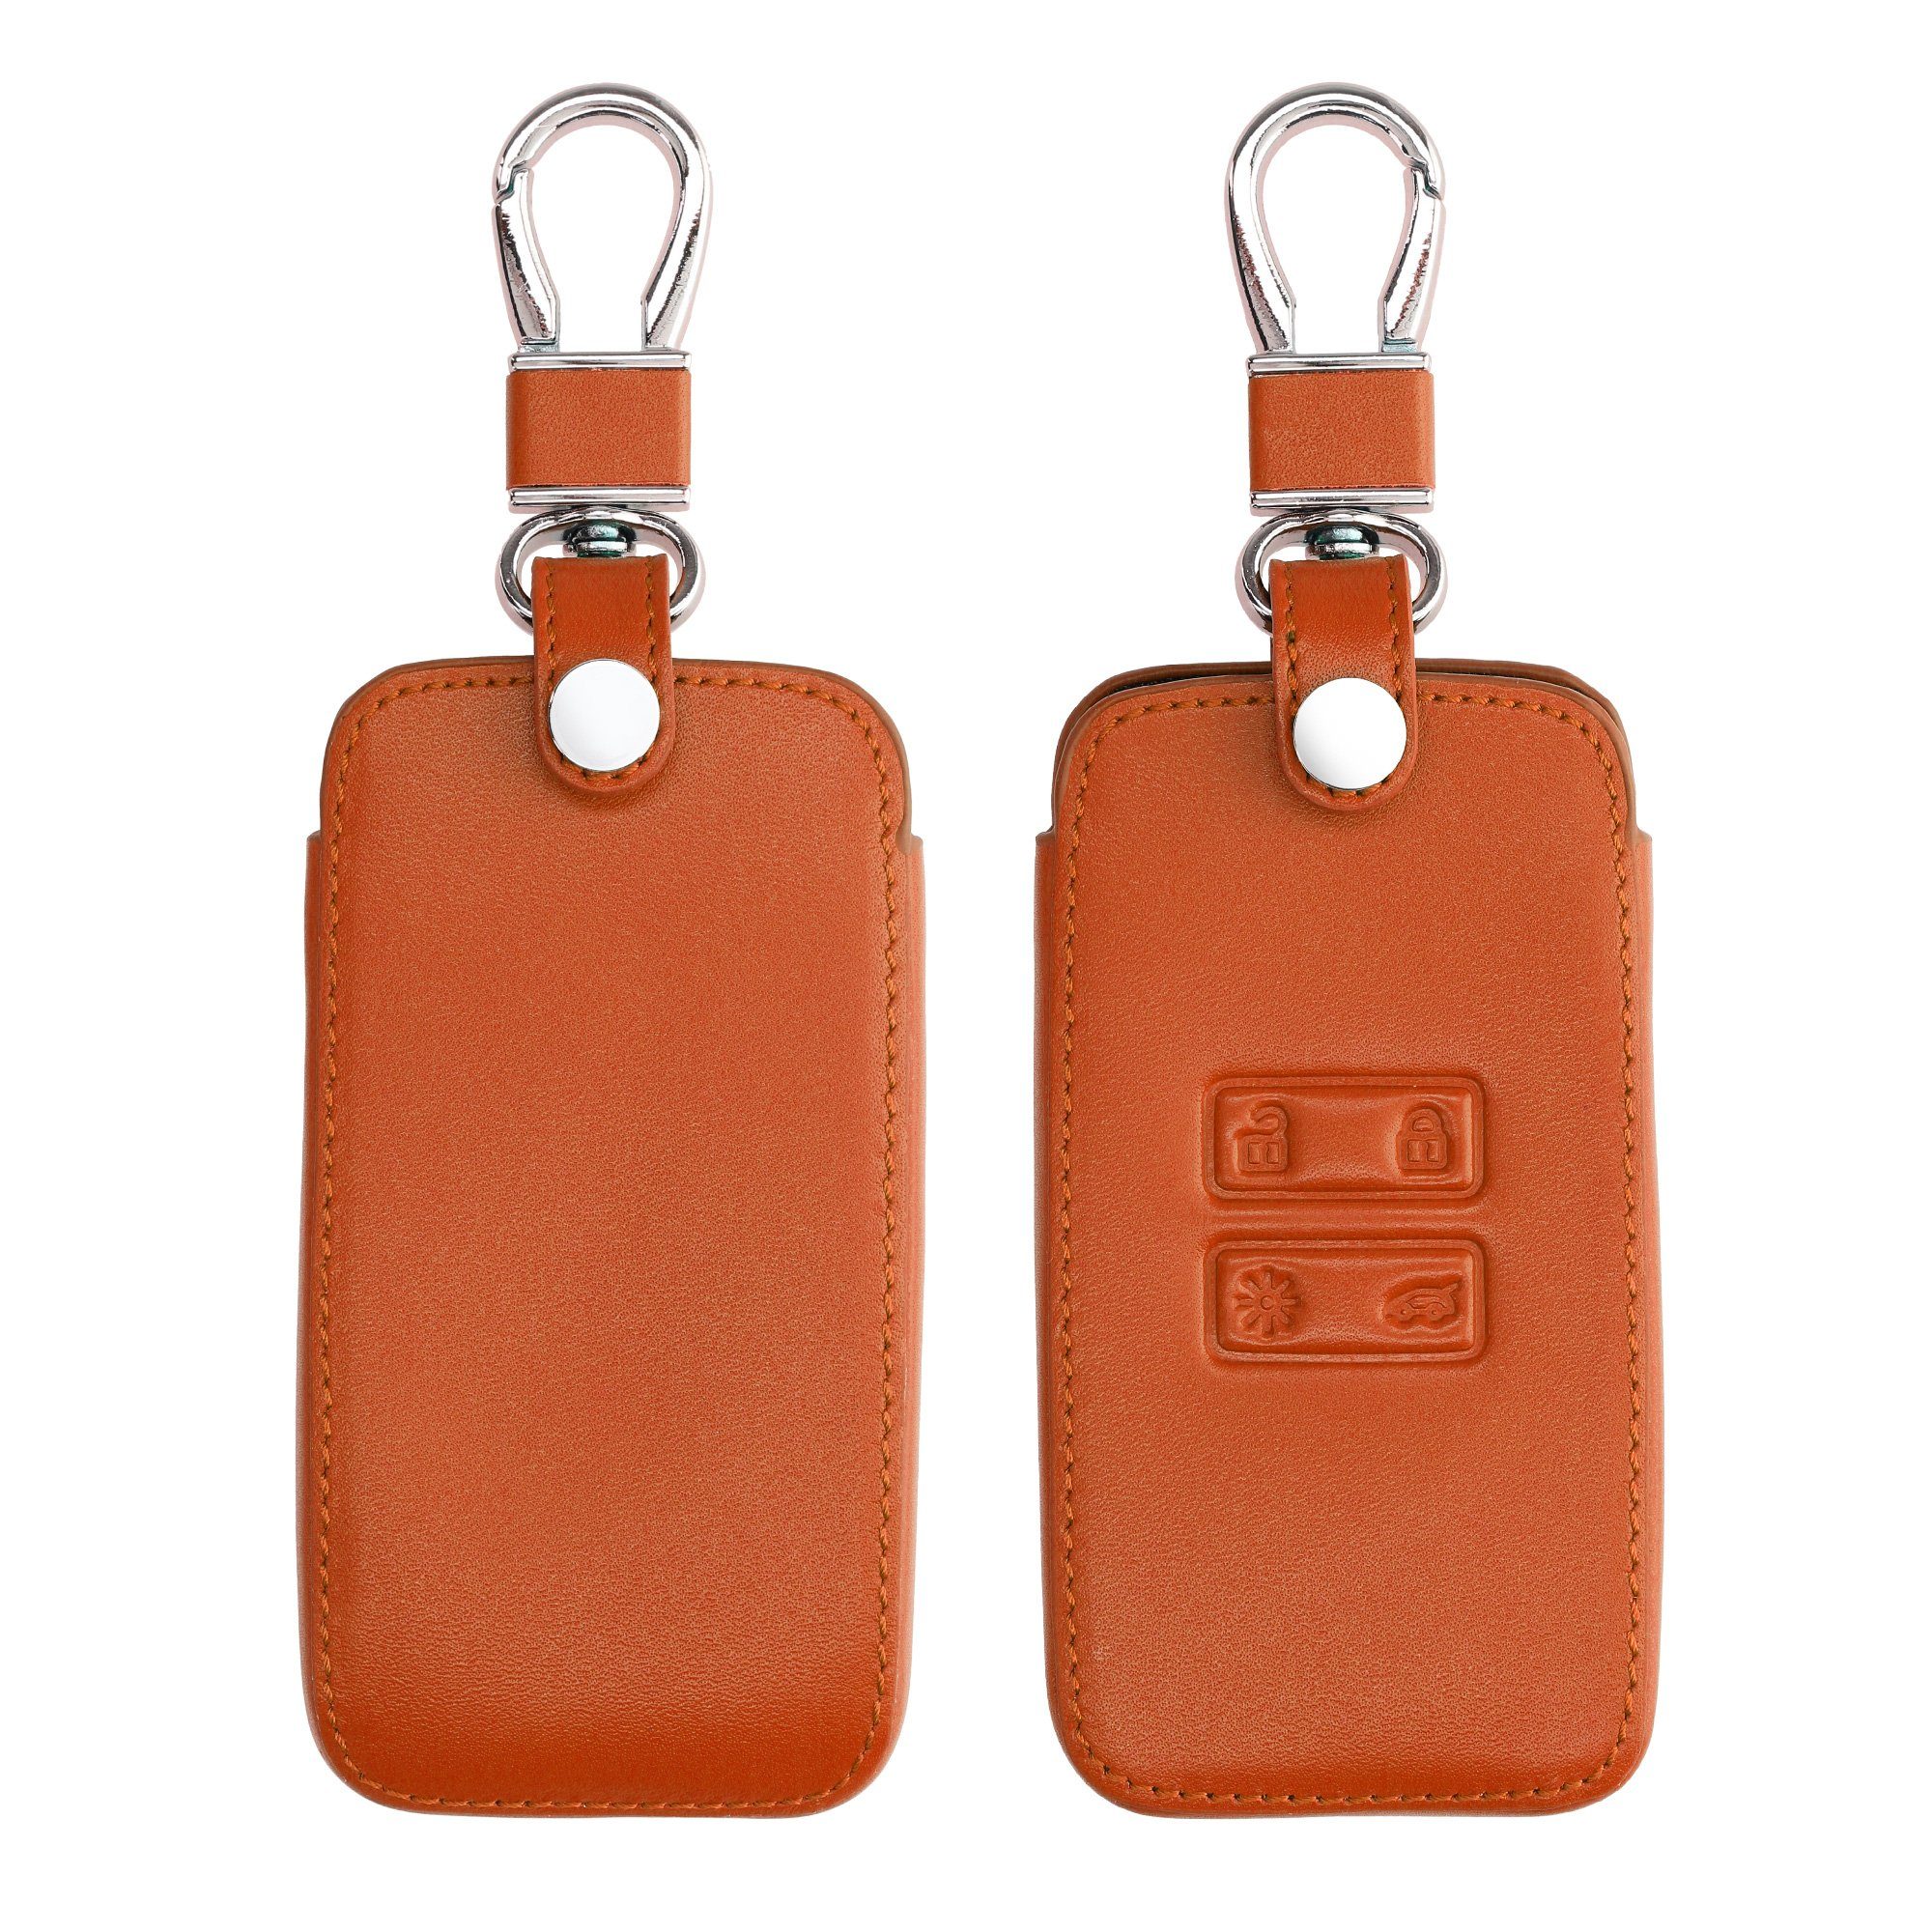 Renault, Schlüssel Hülle Orange Autoschlüssel Cover für Schlüsseltasche kwmobile Case Schlüsselhülle Kunstleder